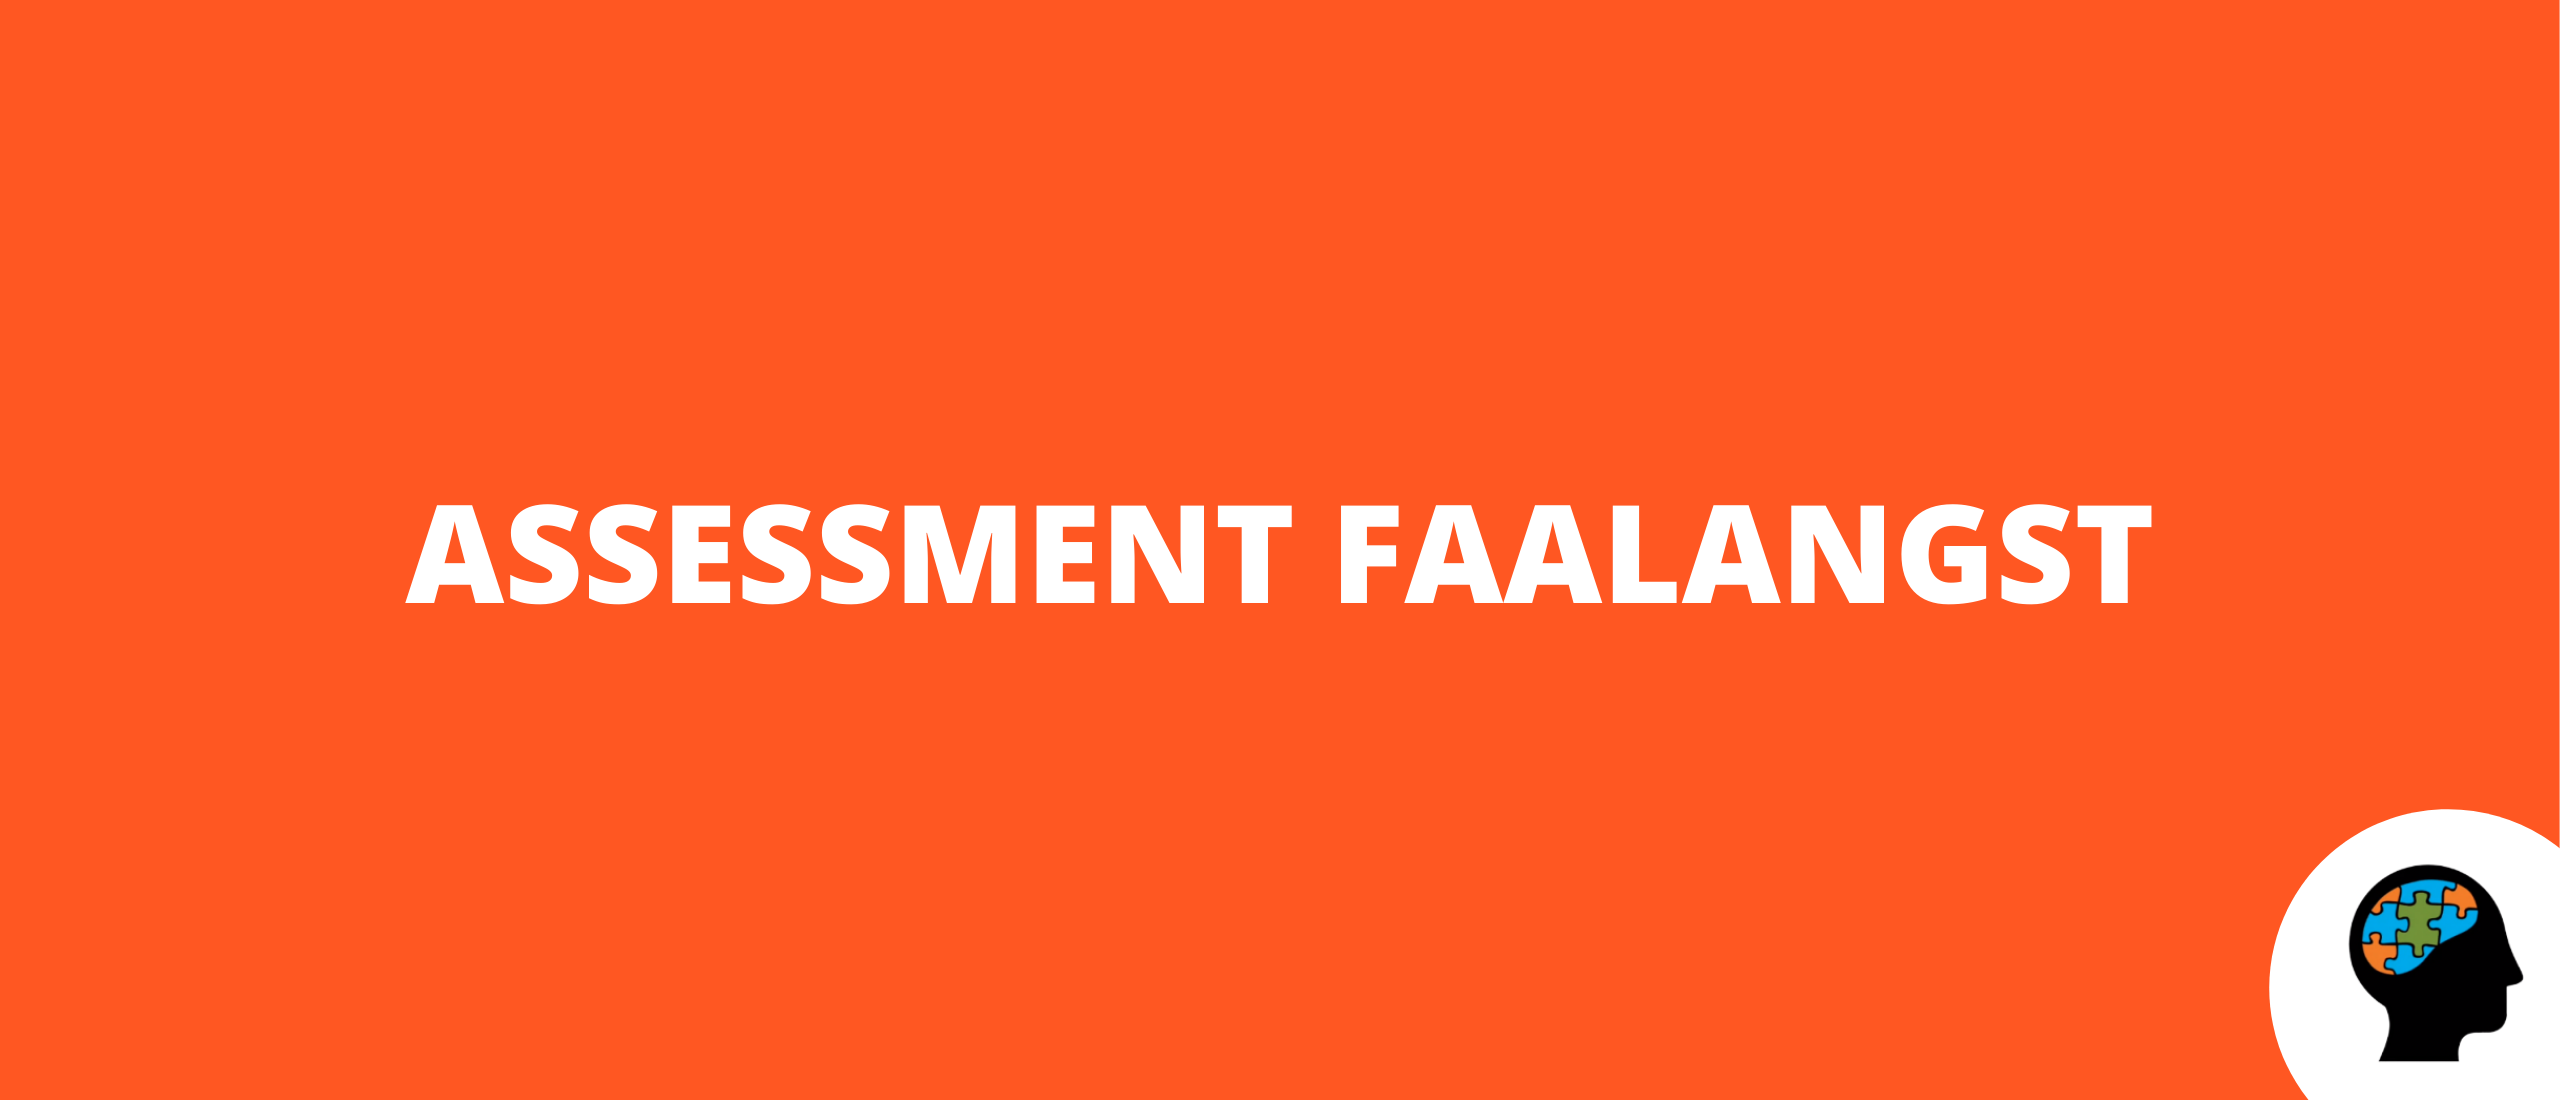 Assessment faalangst